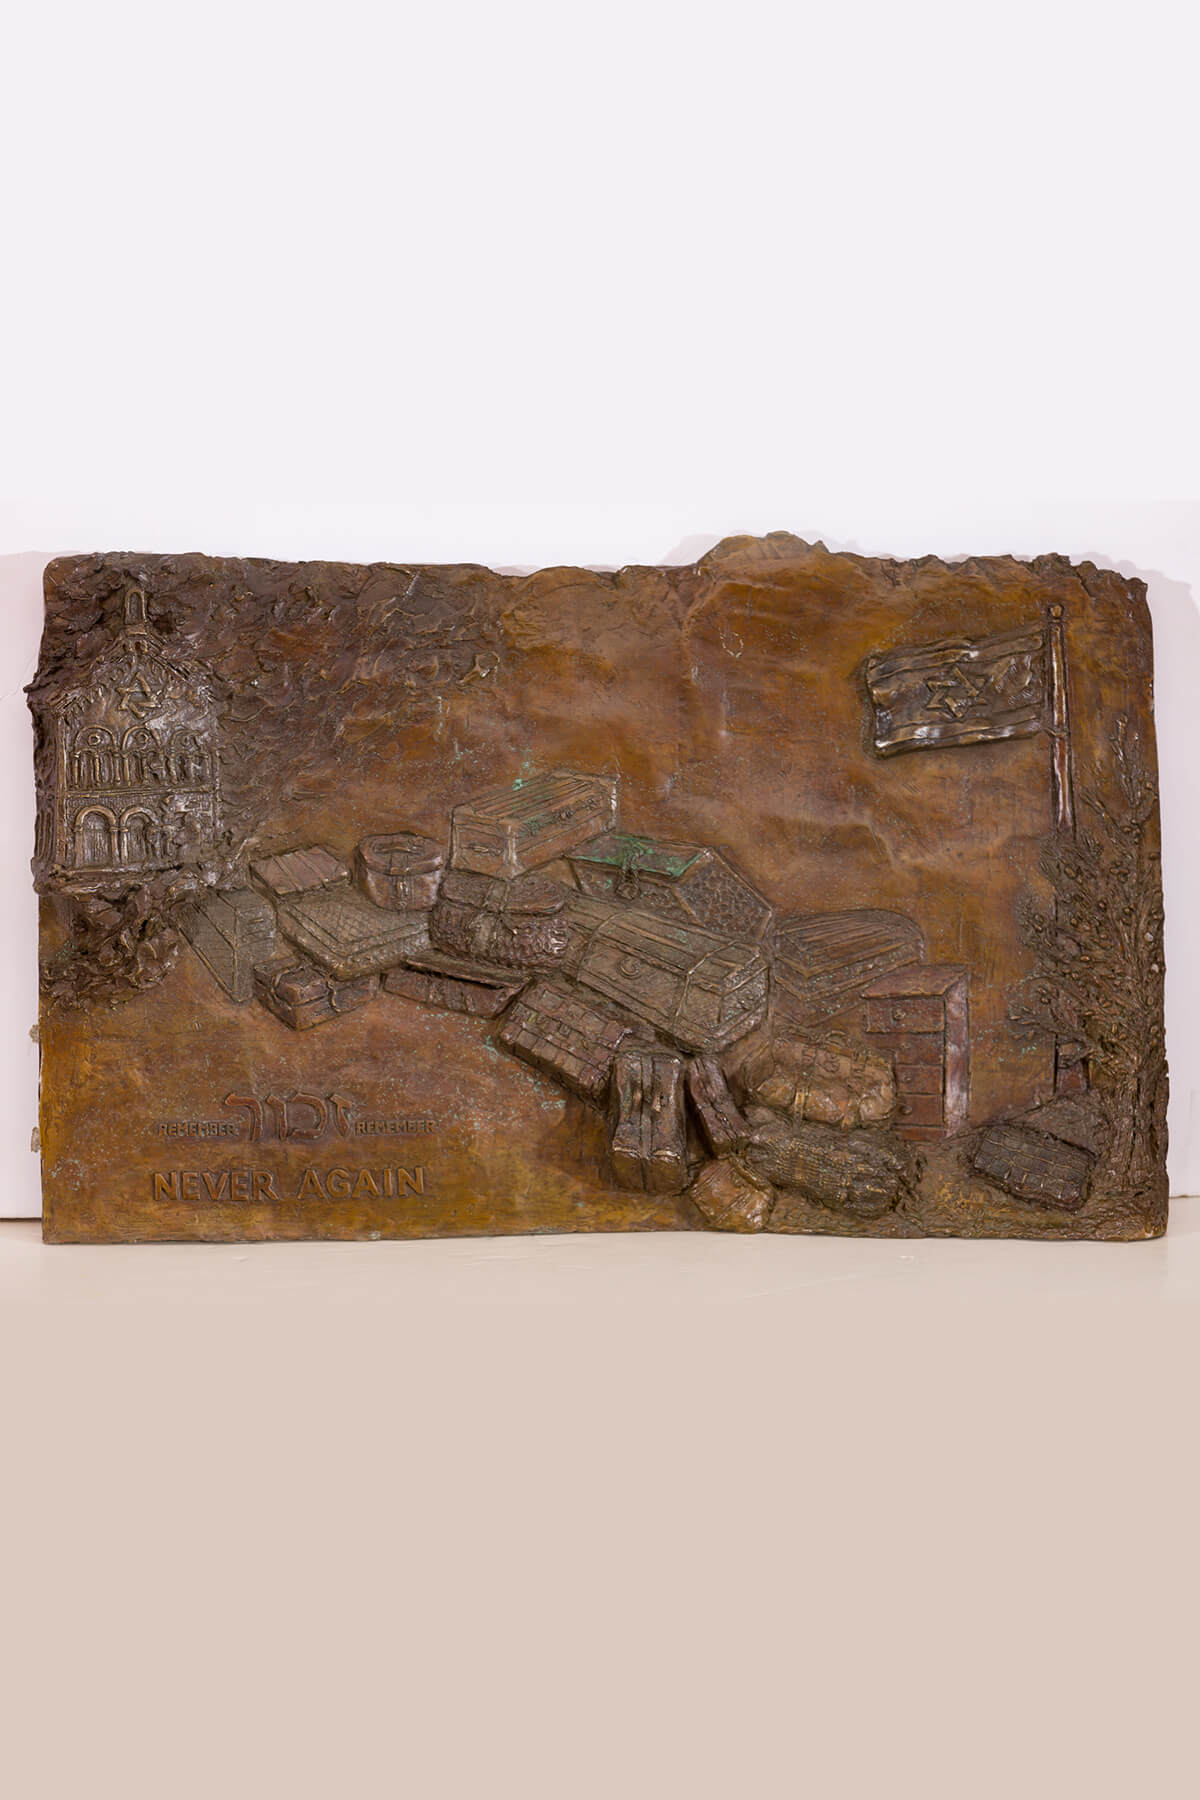 131. A Bronze Sculpture by Steffi Friedman: “Never Again.”